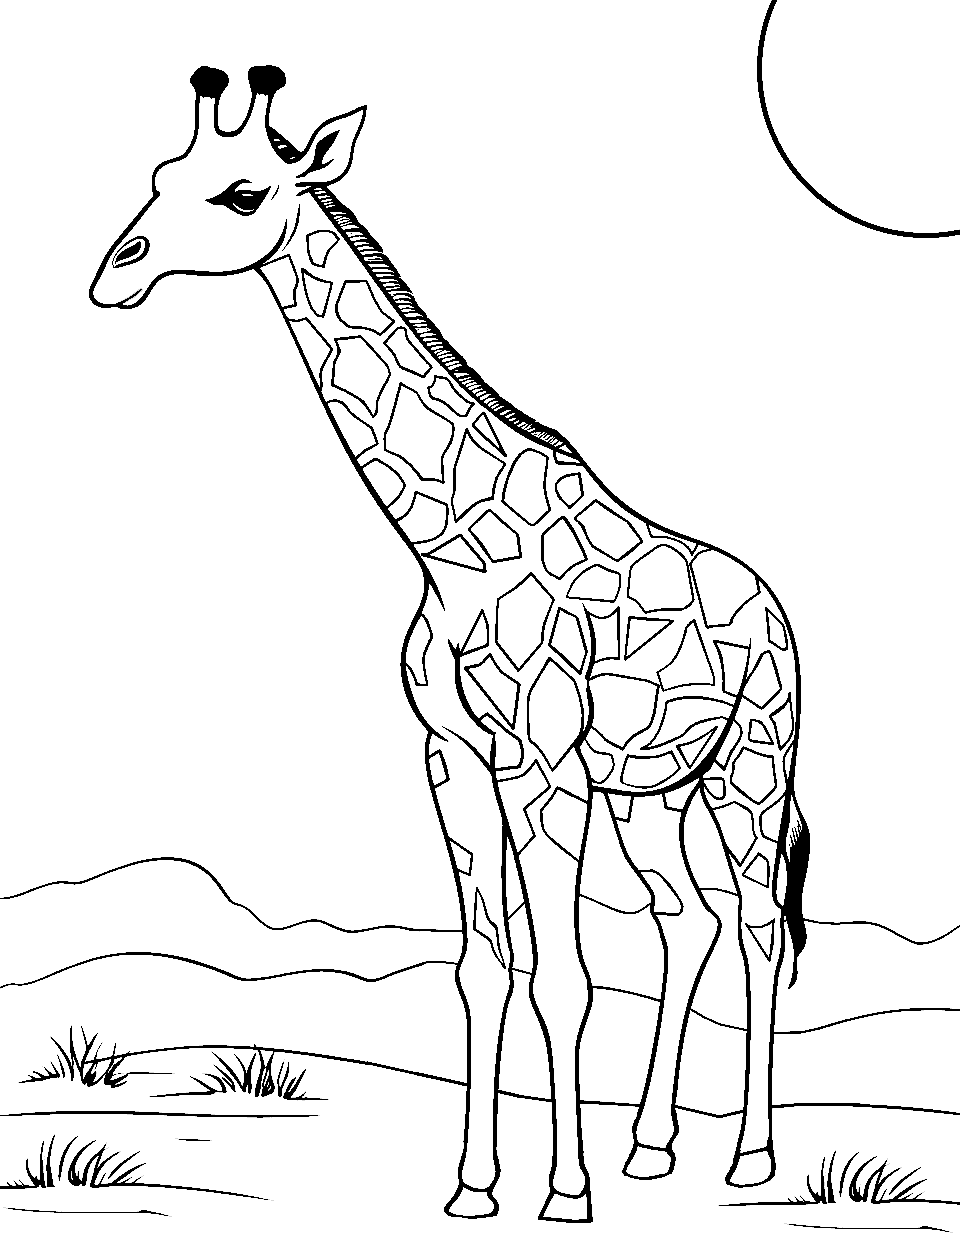 Desert Wanderer Giraffe Coloring Page - A giraffe journeying through sandy dunes.